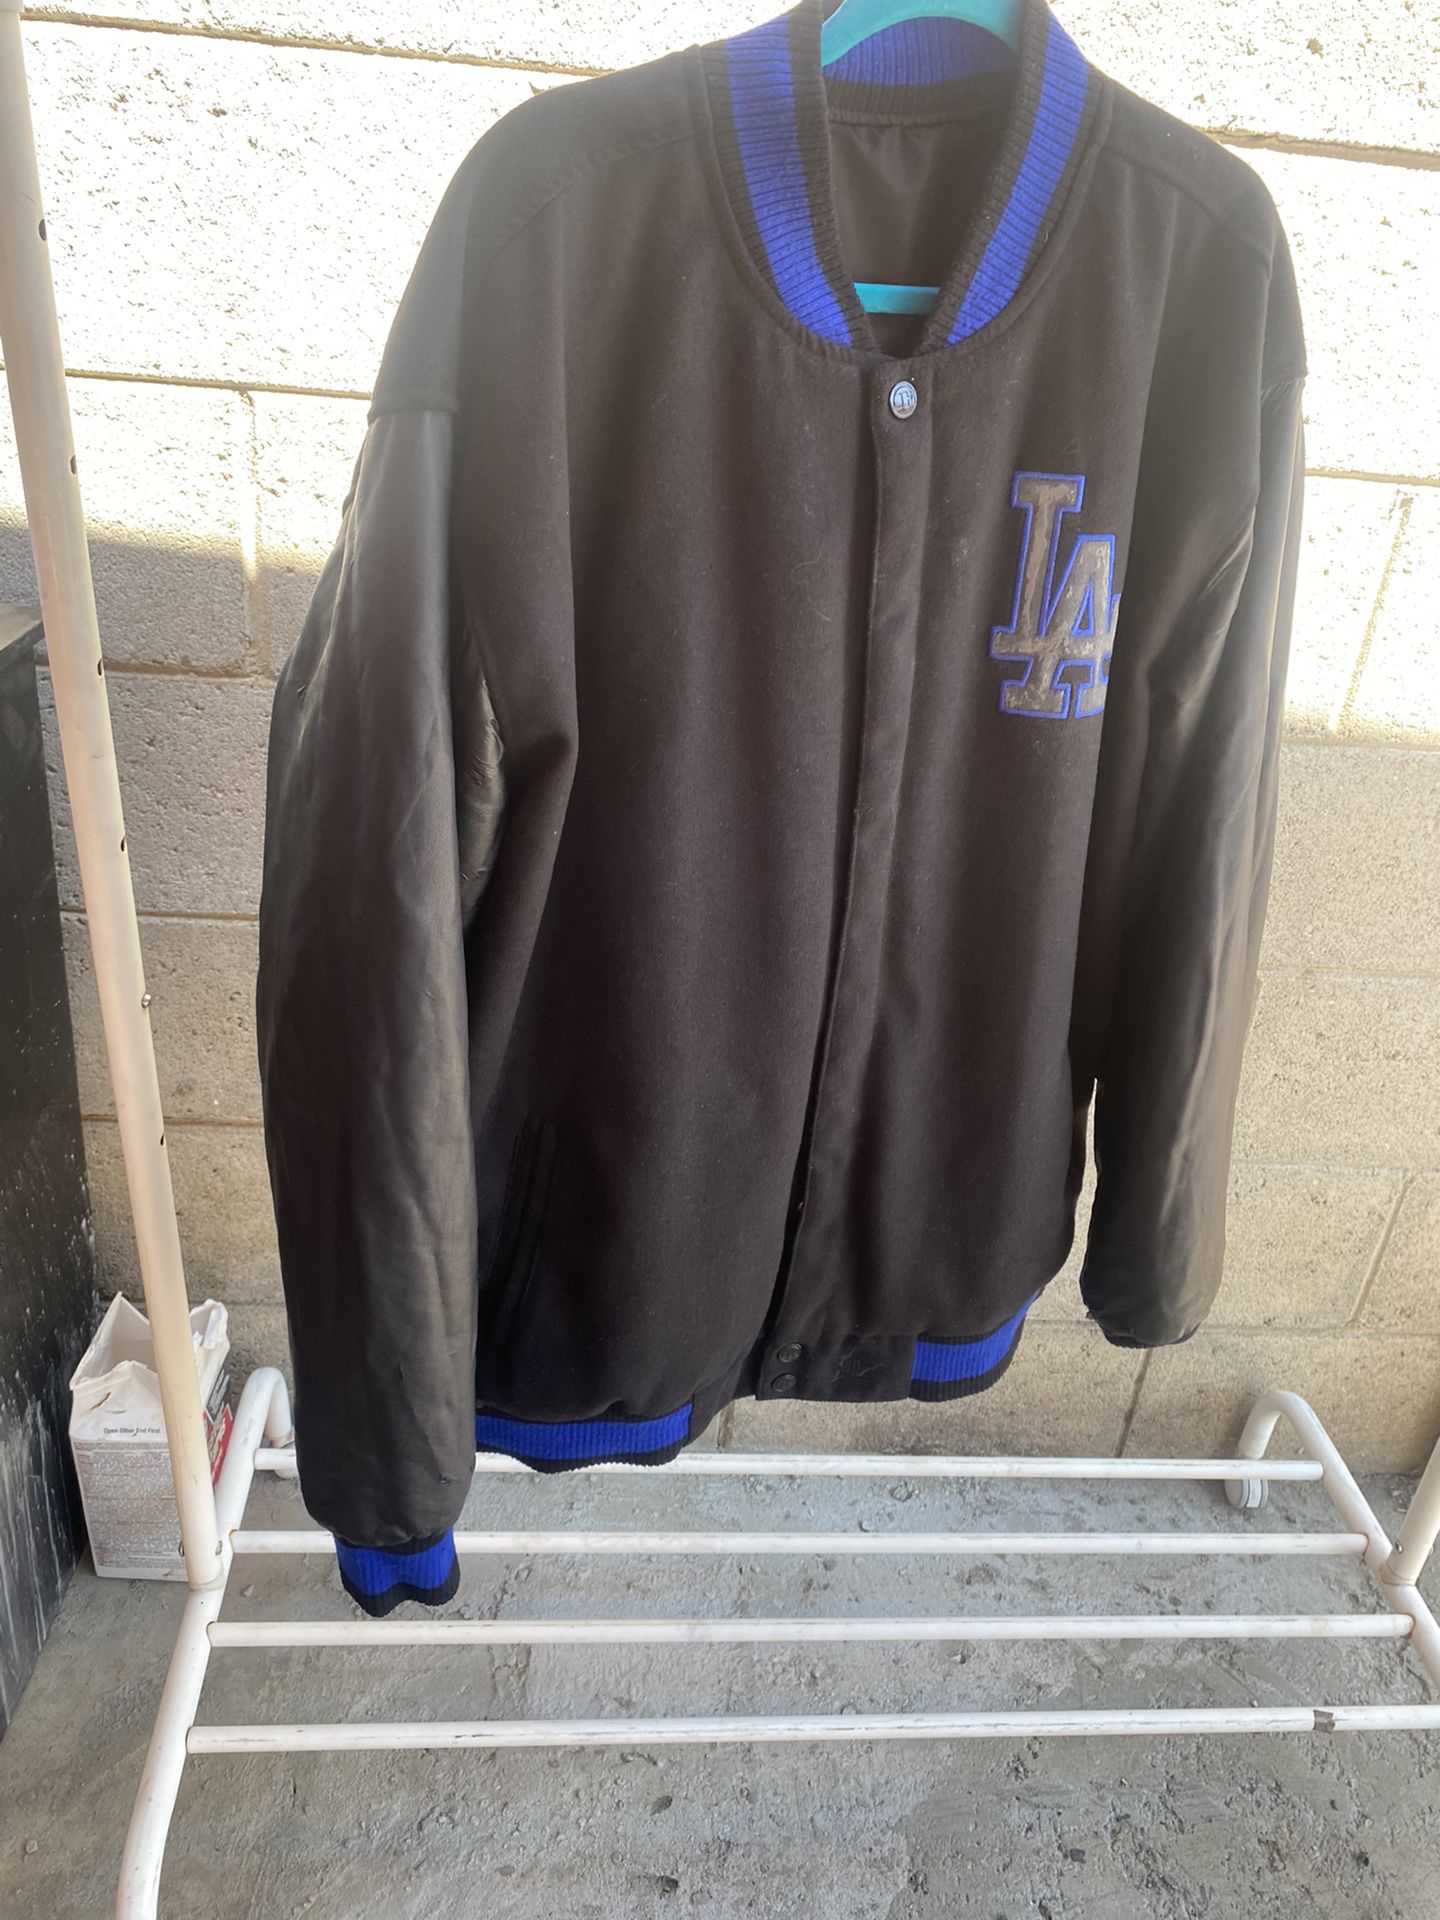 JH Design Dodgers Jacket Size Medium for Sale in Las Vegas, NV - OfferUp